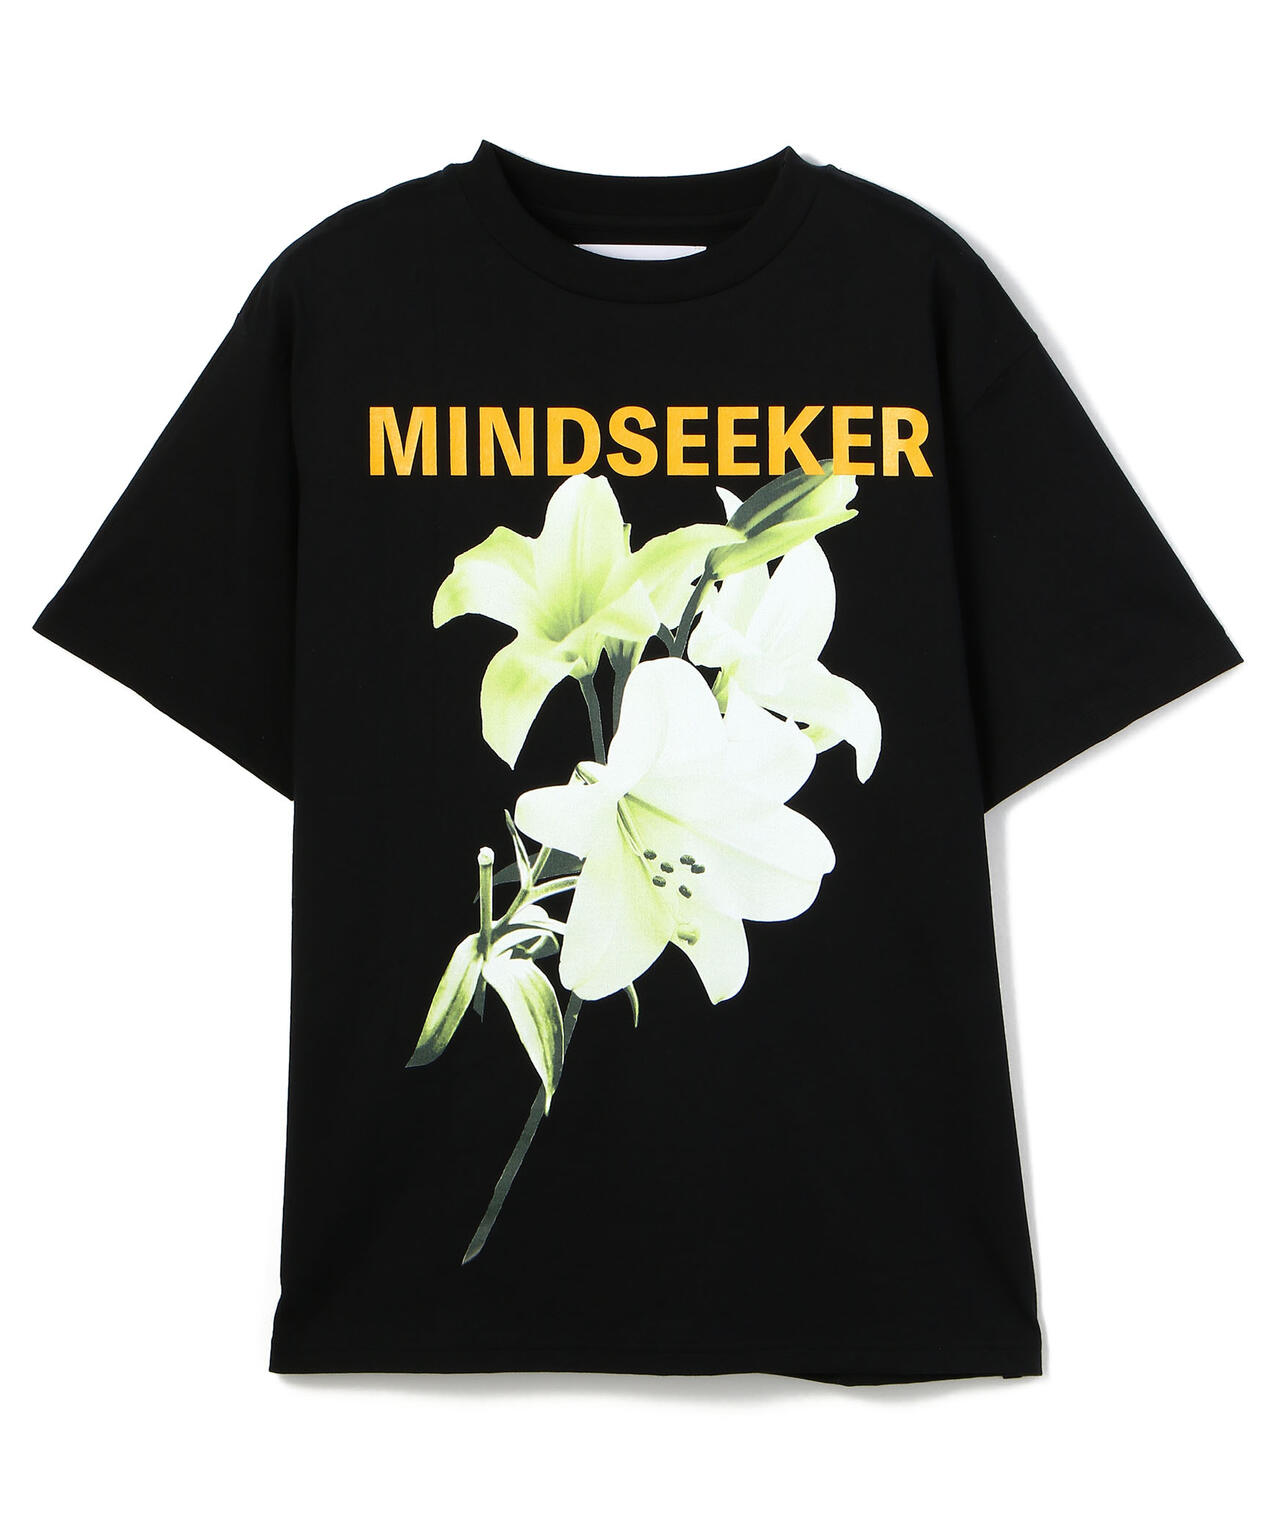 【新品未使用】Mindseeker マインドシーカー Tシャツ